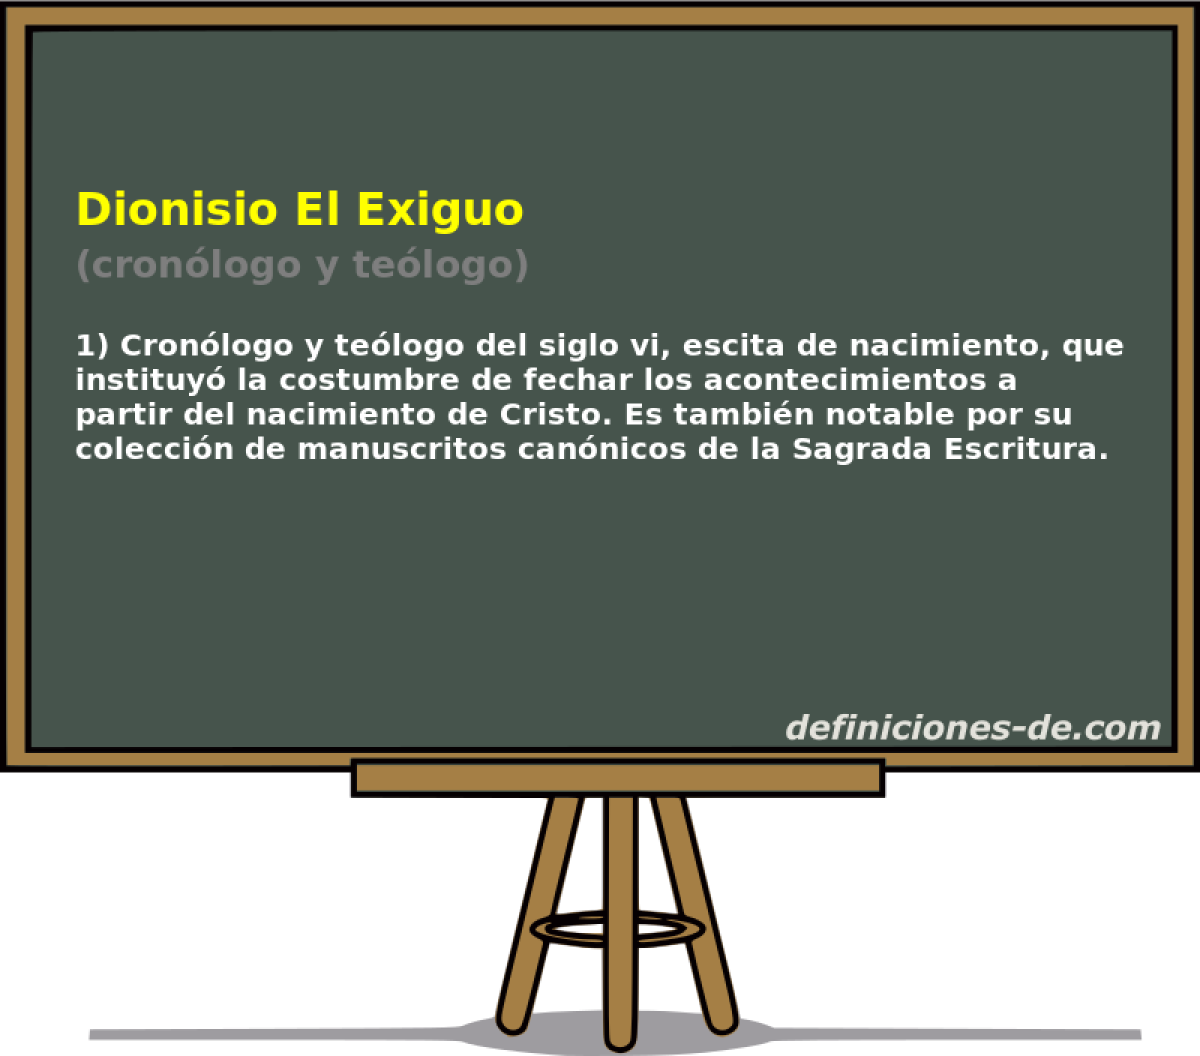 Dionisio El Exiguo (cronlogo y telogo)